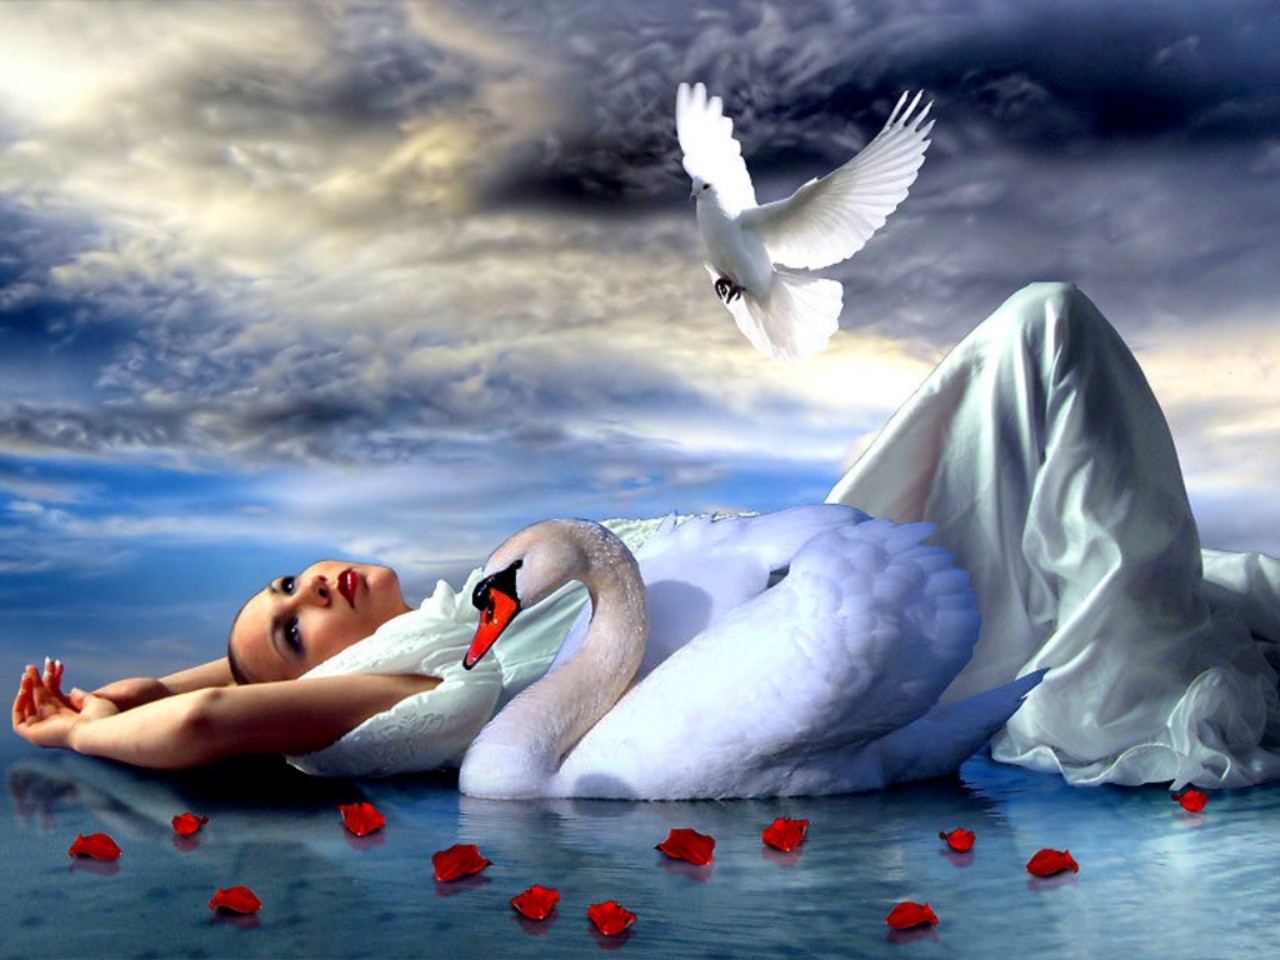 swan, women, fantasy